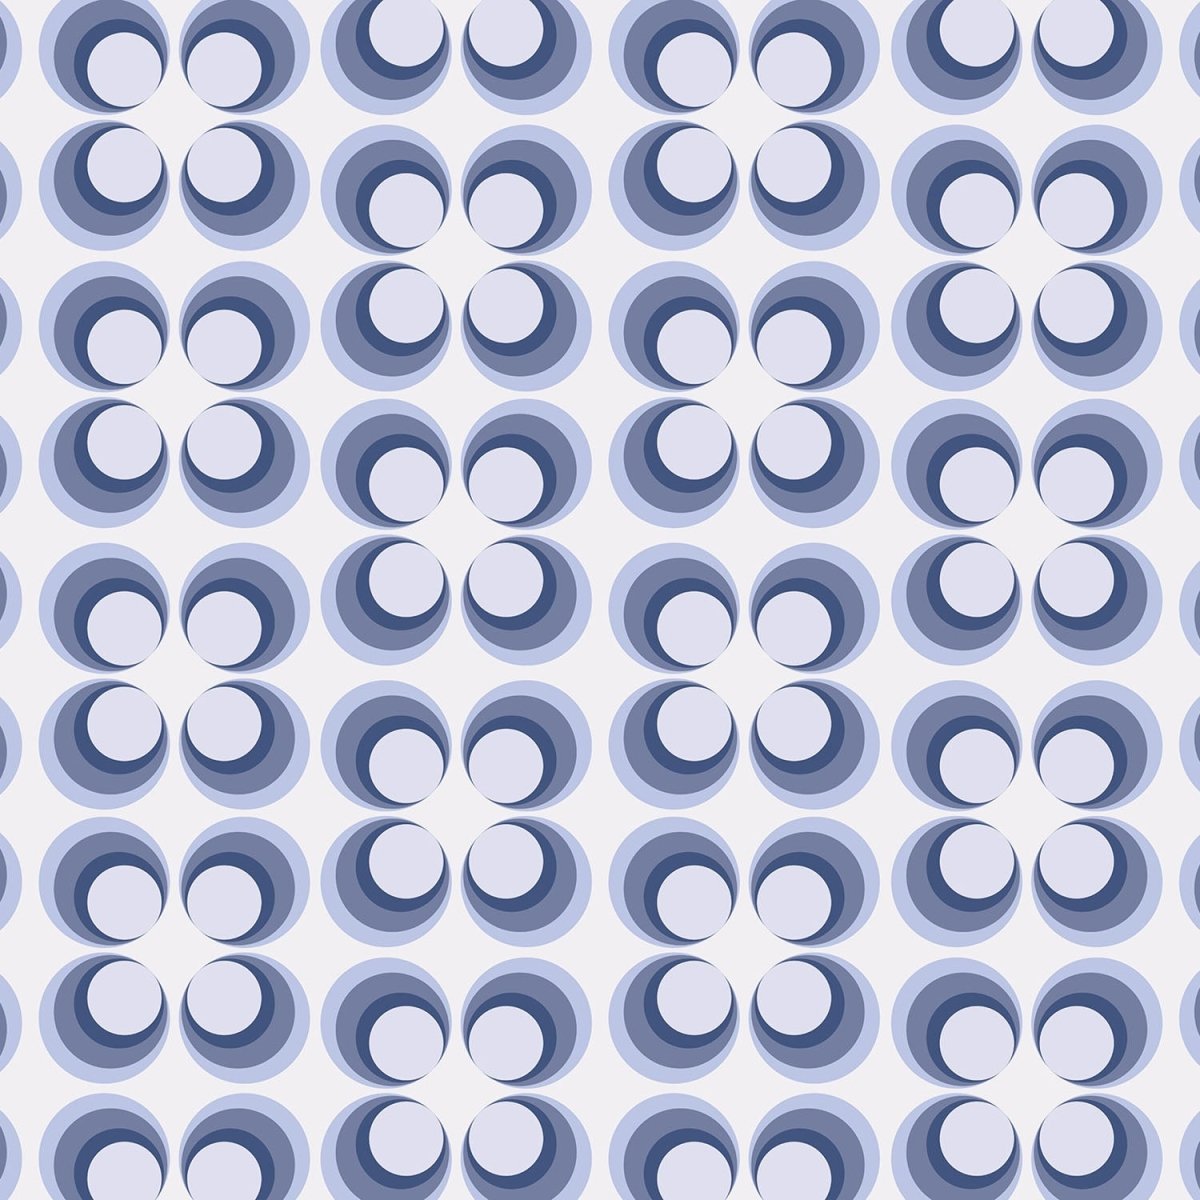 Beistelltisch Retrokreise Blau Muster M0099 entdecken - Bild 2